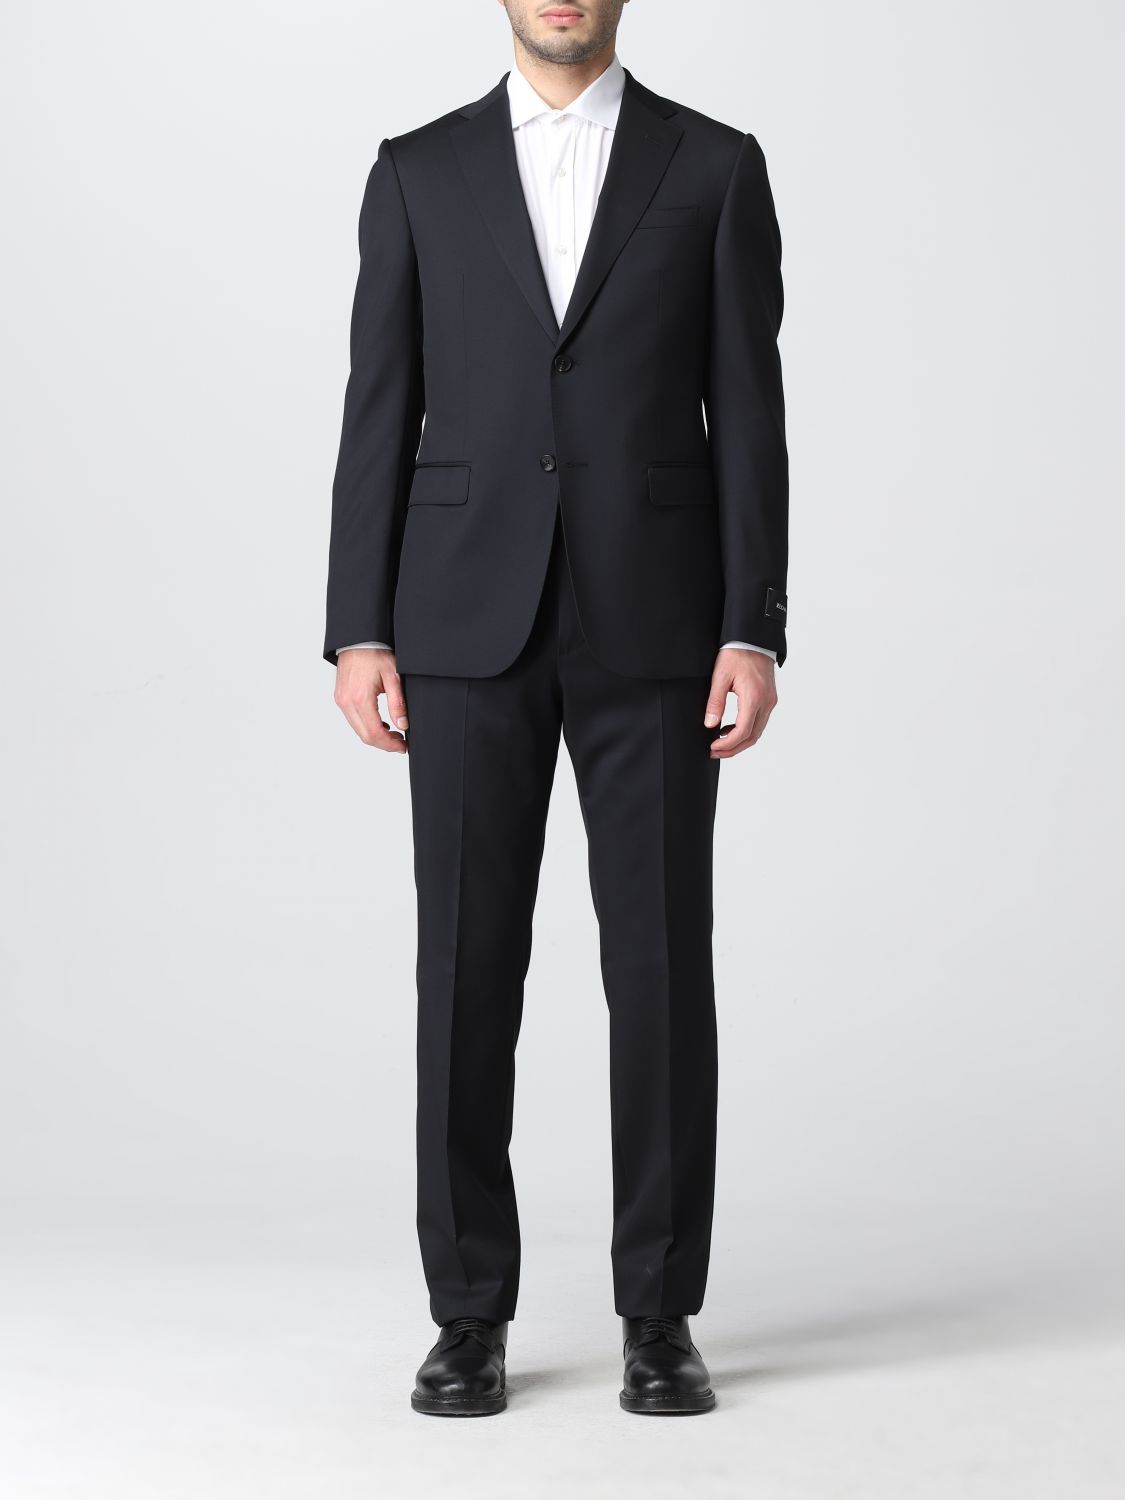 Z ZEGNA: suit for man - Black | Z Zegna suit 32484828QCGN online on ...